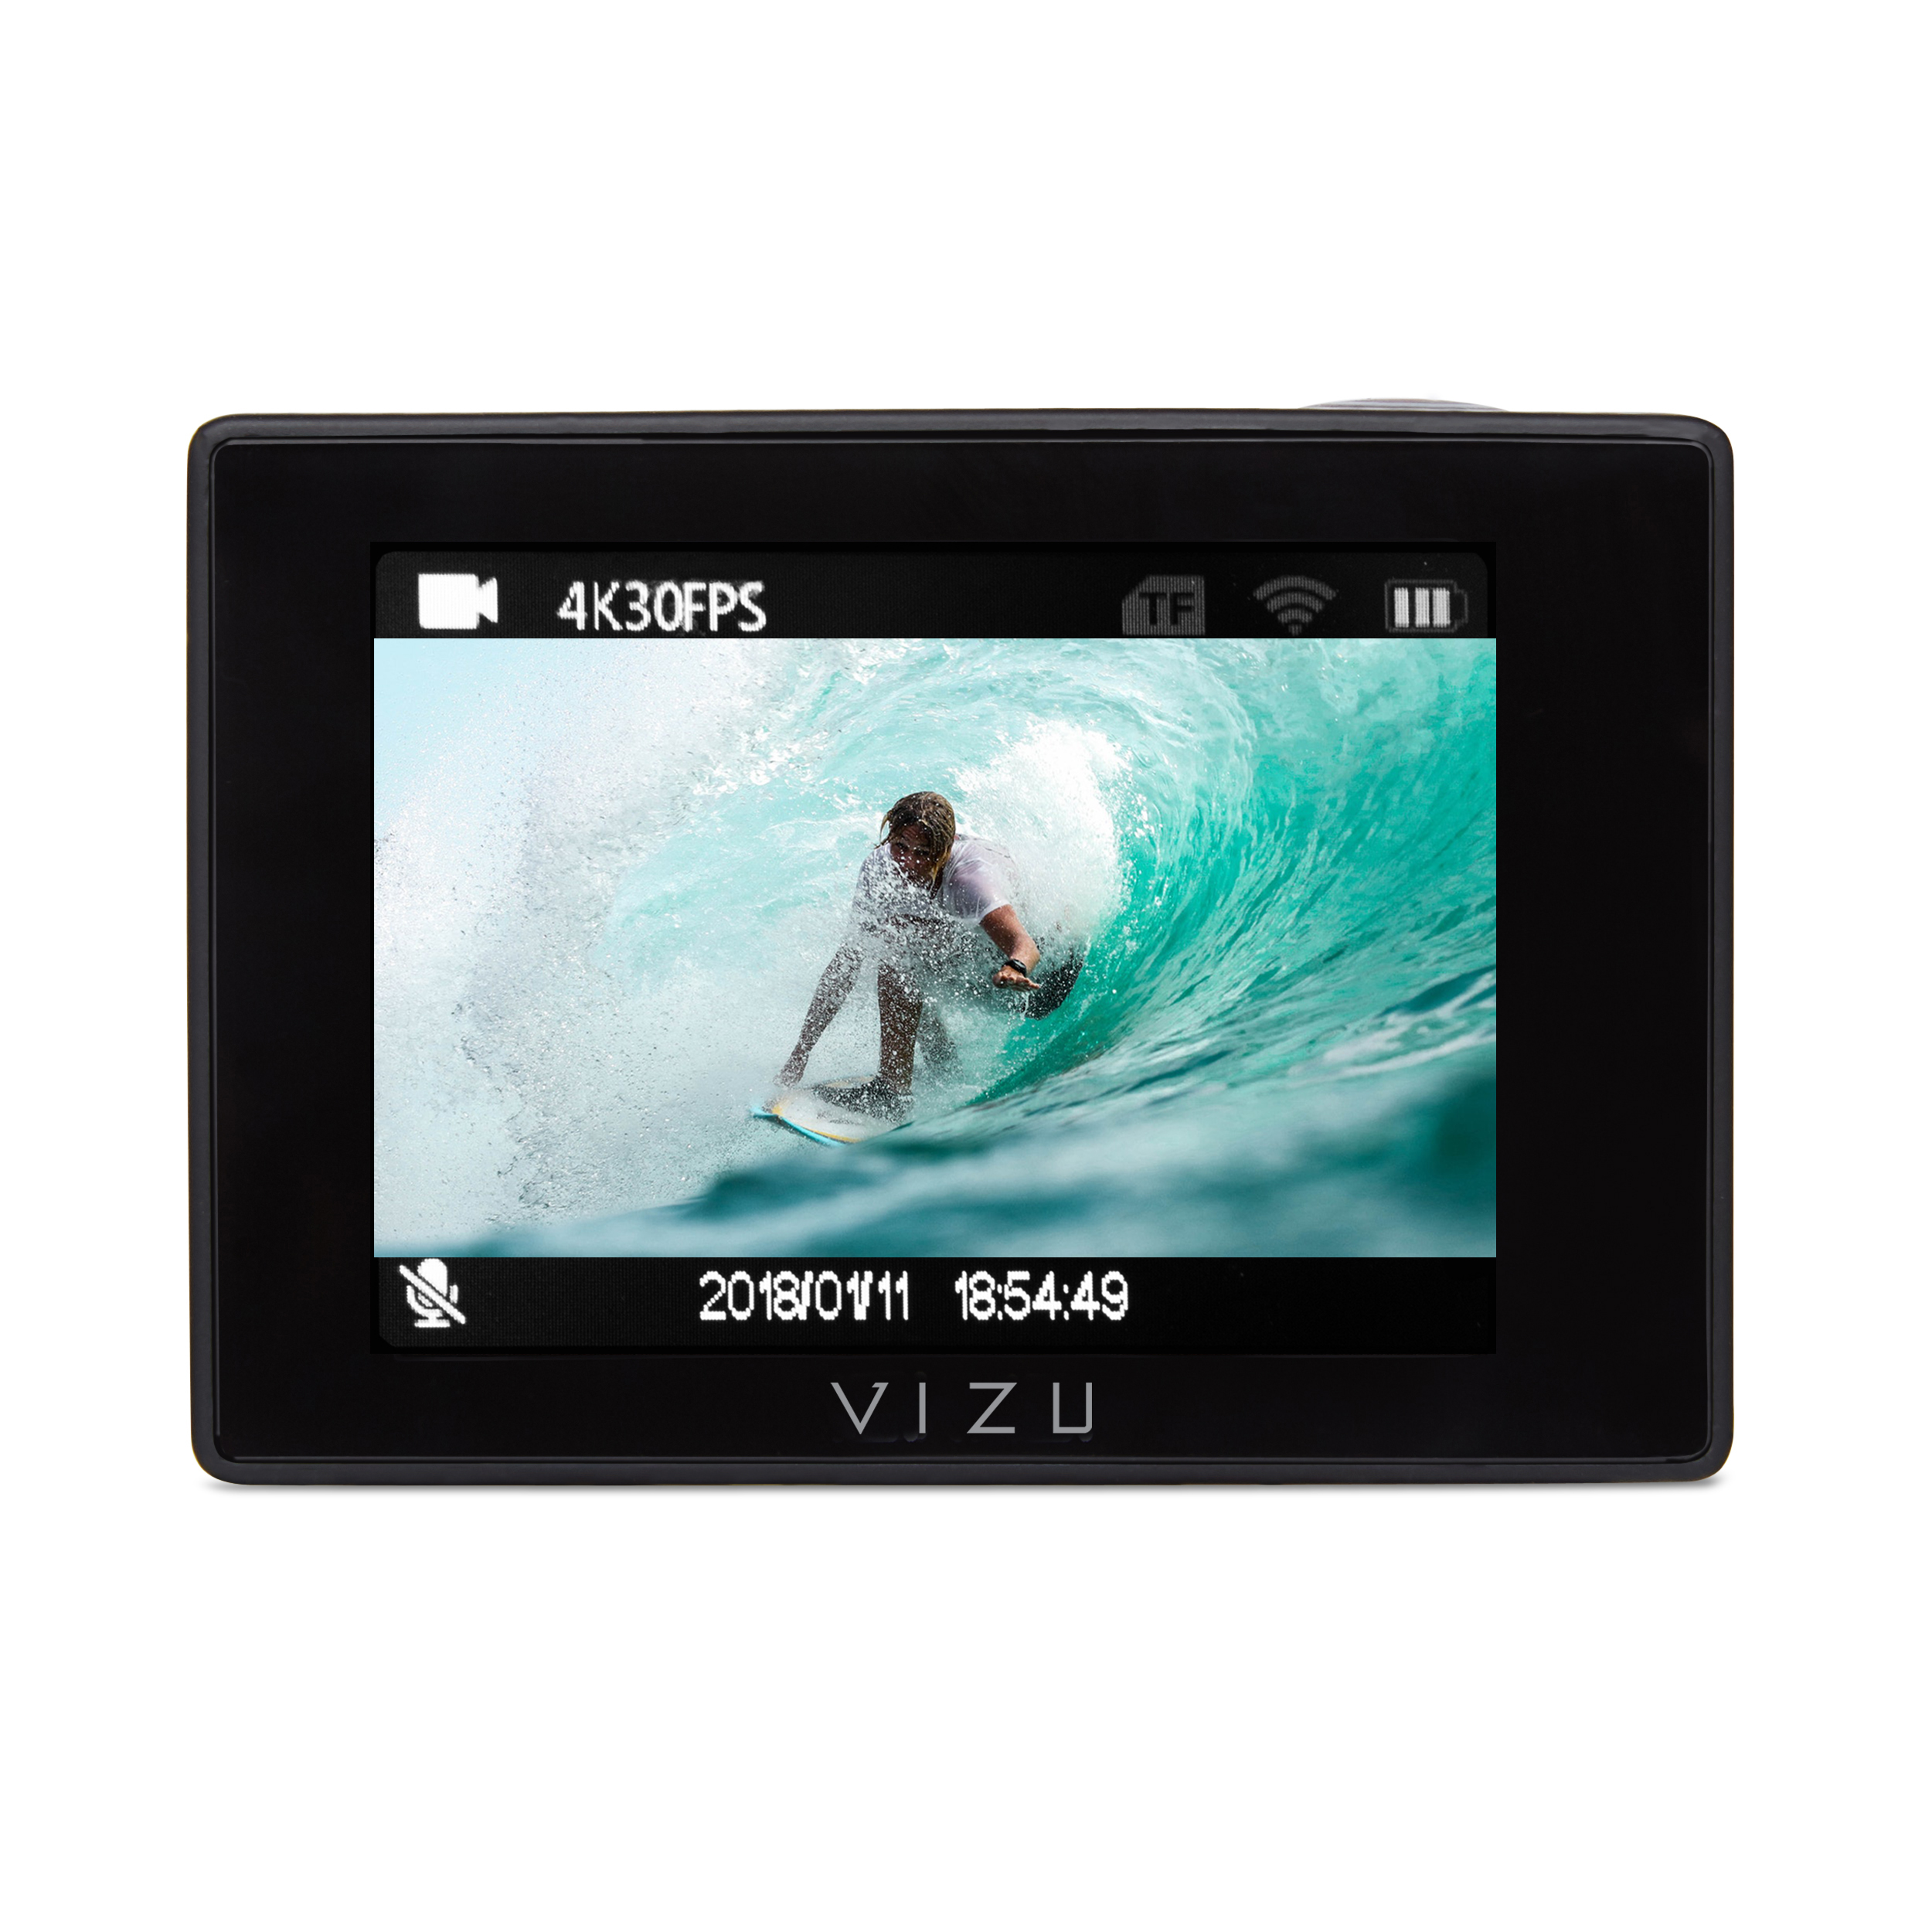 VIZU Extreme X6S Action Cam Action Cam Wasserdicht Wlan, 4K